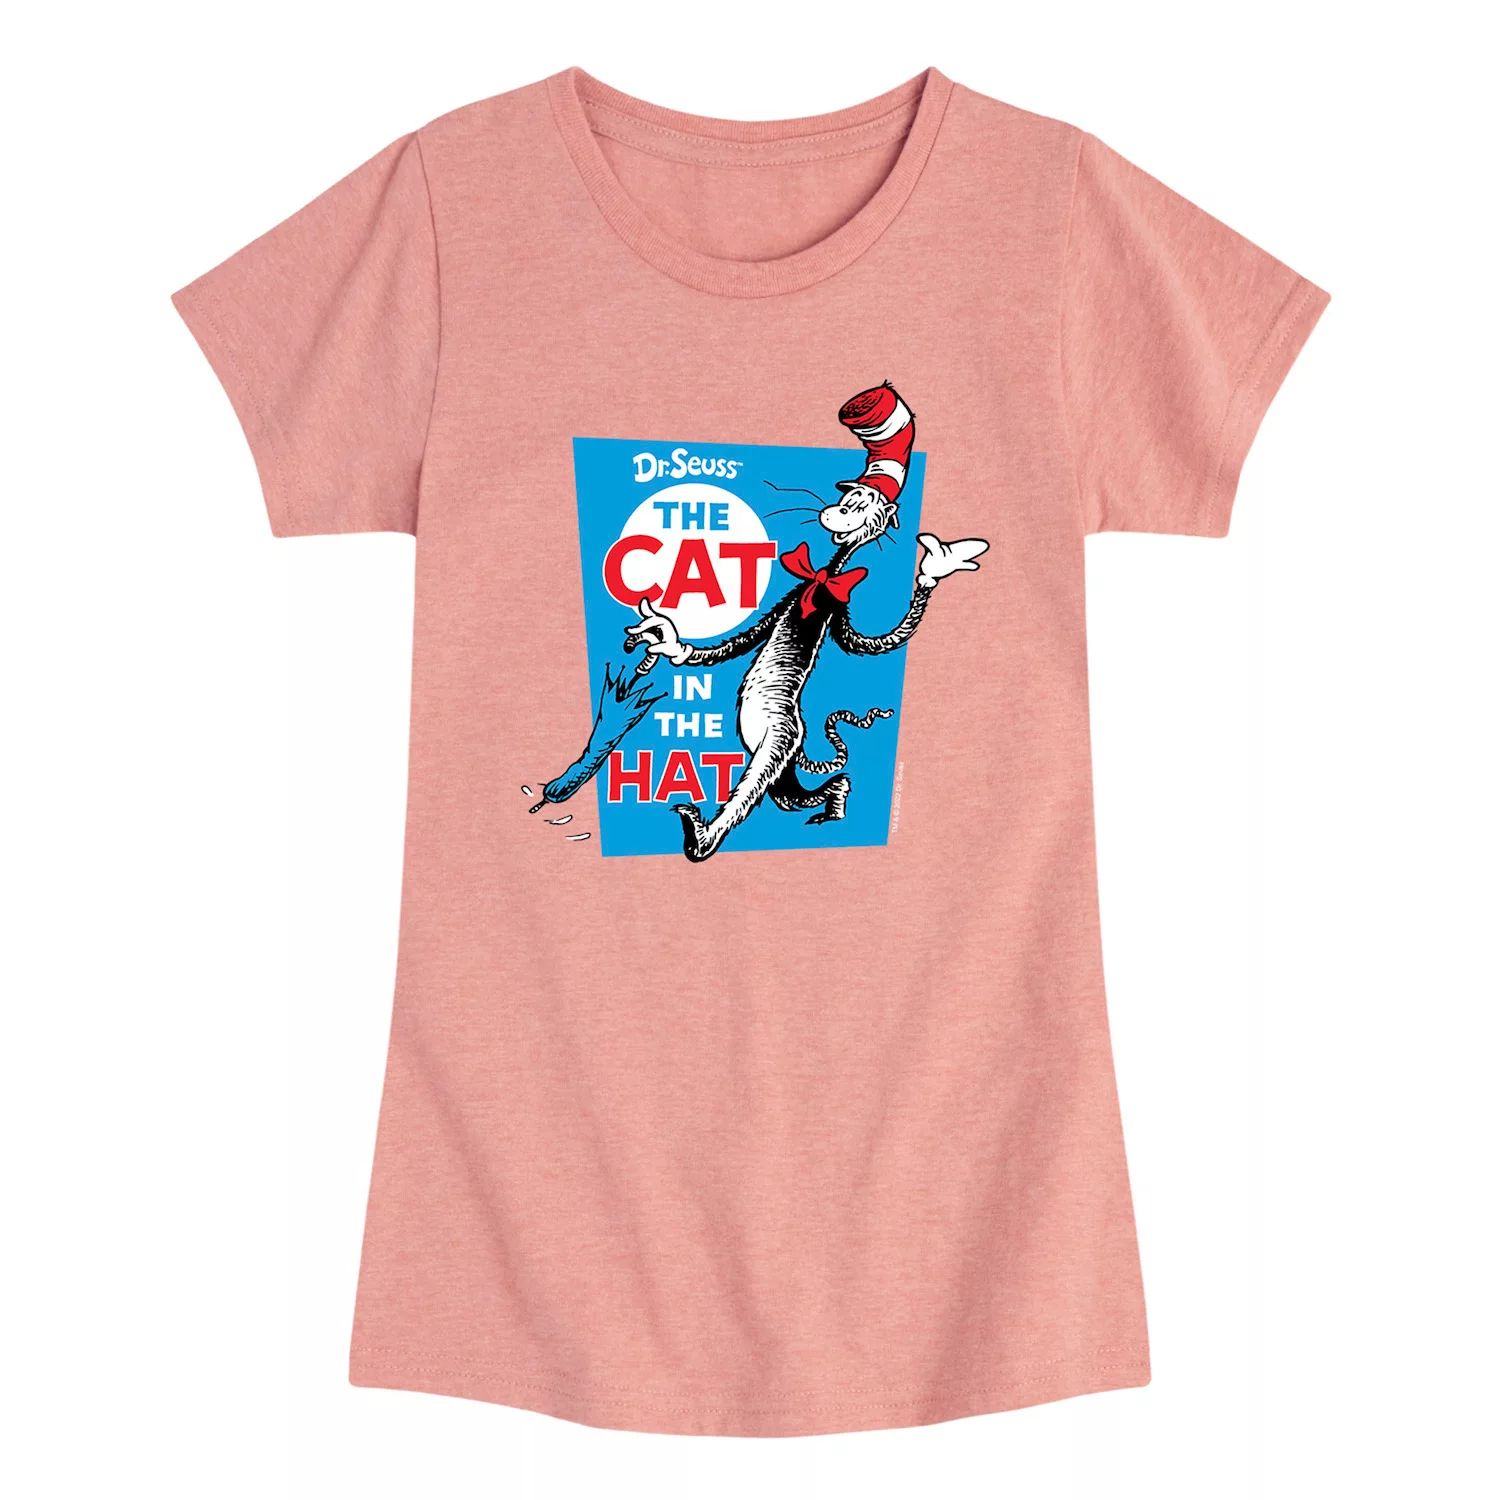 Футболка с рисунком «Кот в шляпе» для девочек 7–16 лет «Доктор Сьюз» Licensed Character, розовый девочки 7–16 лет доктор сьюз я отправляюсь в прекрасные места футболка с графическим рисунком dr seuss